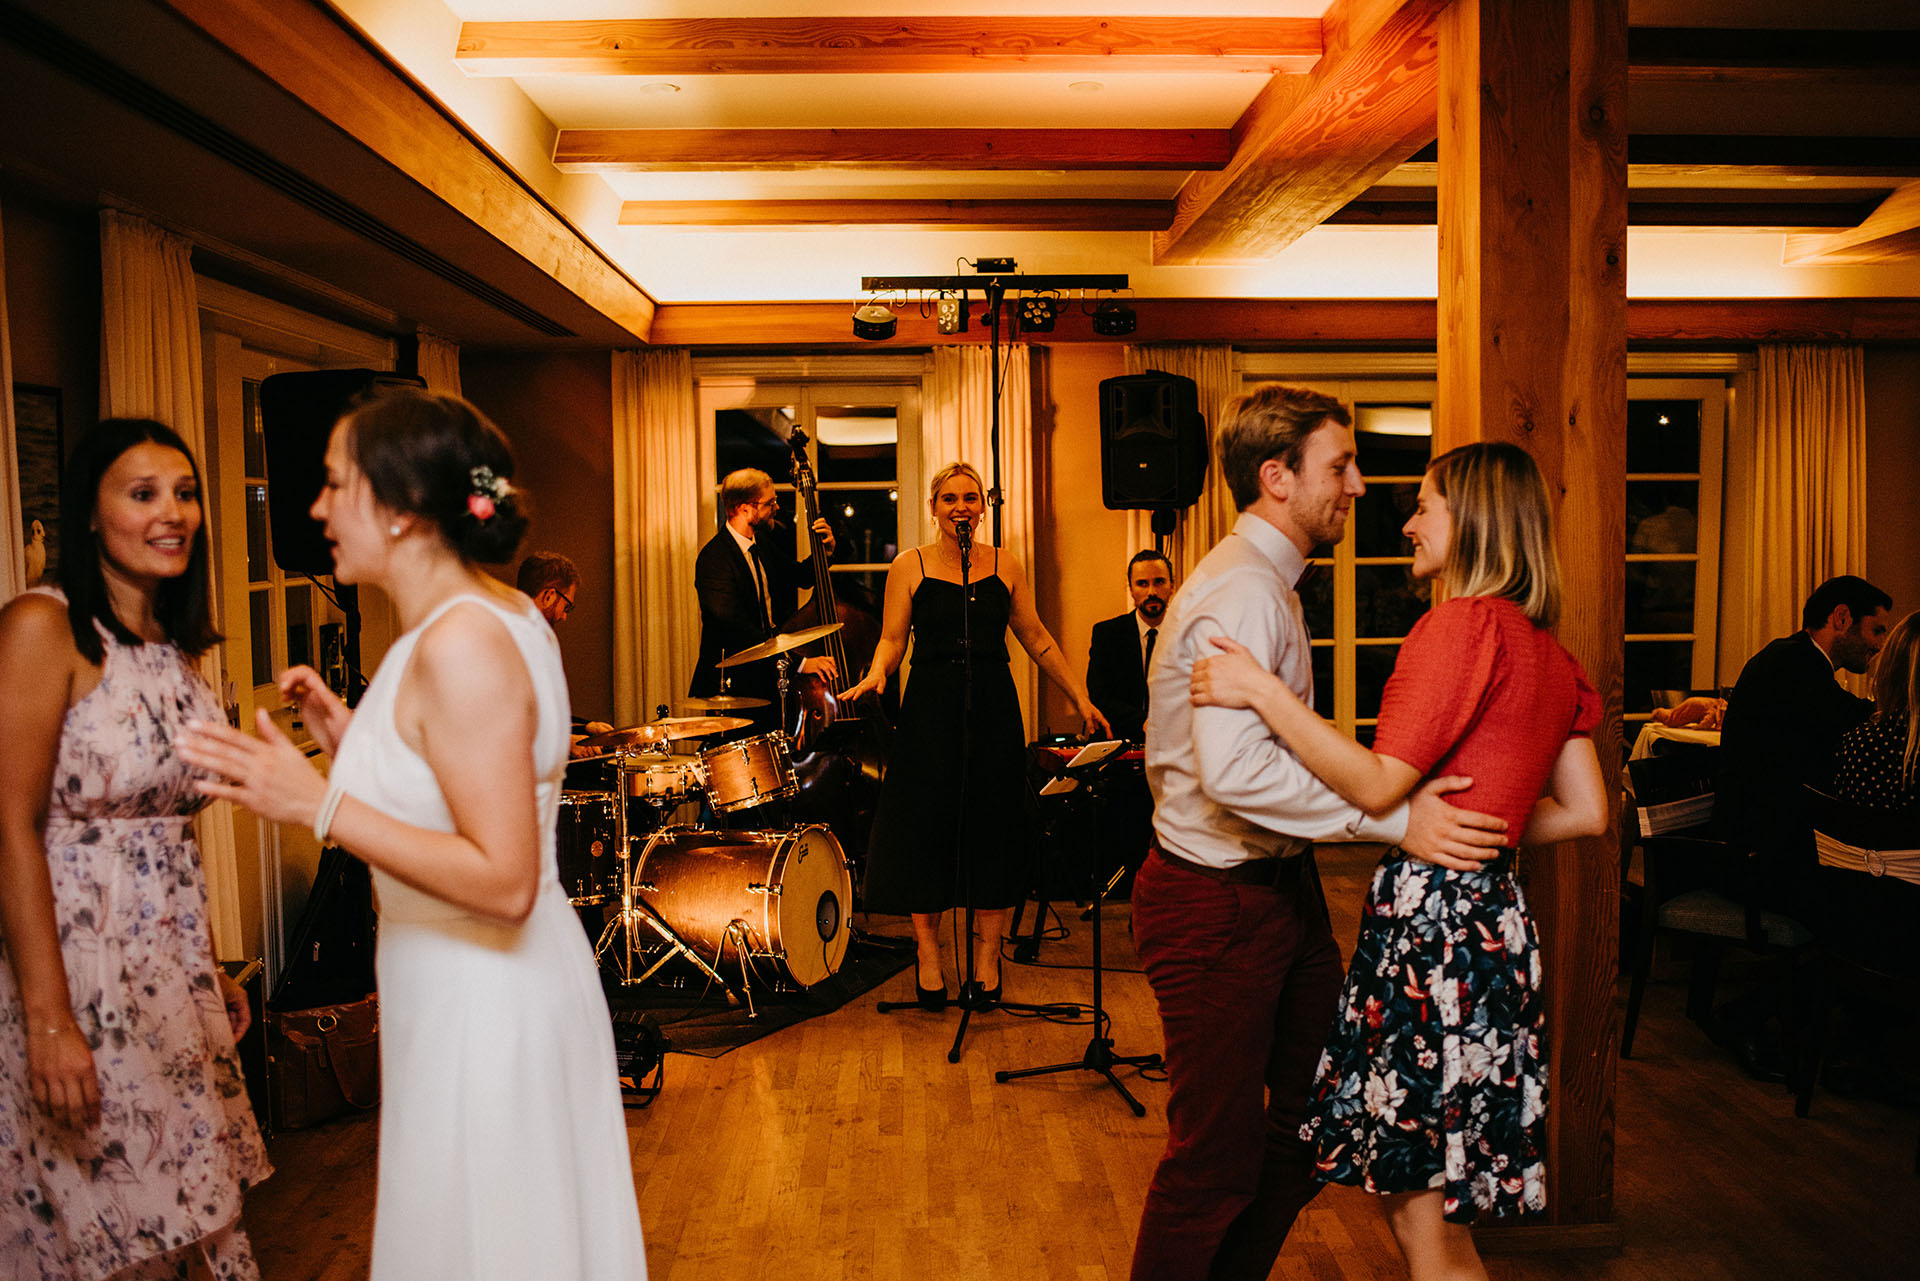 Jazzband bei einer Hochzeit als Partyband.